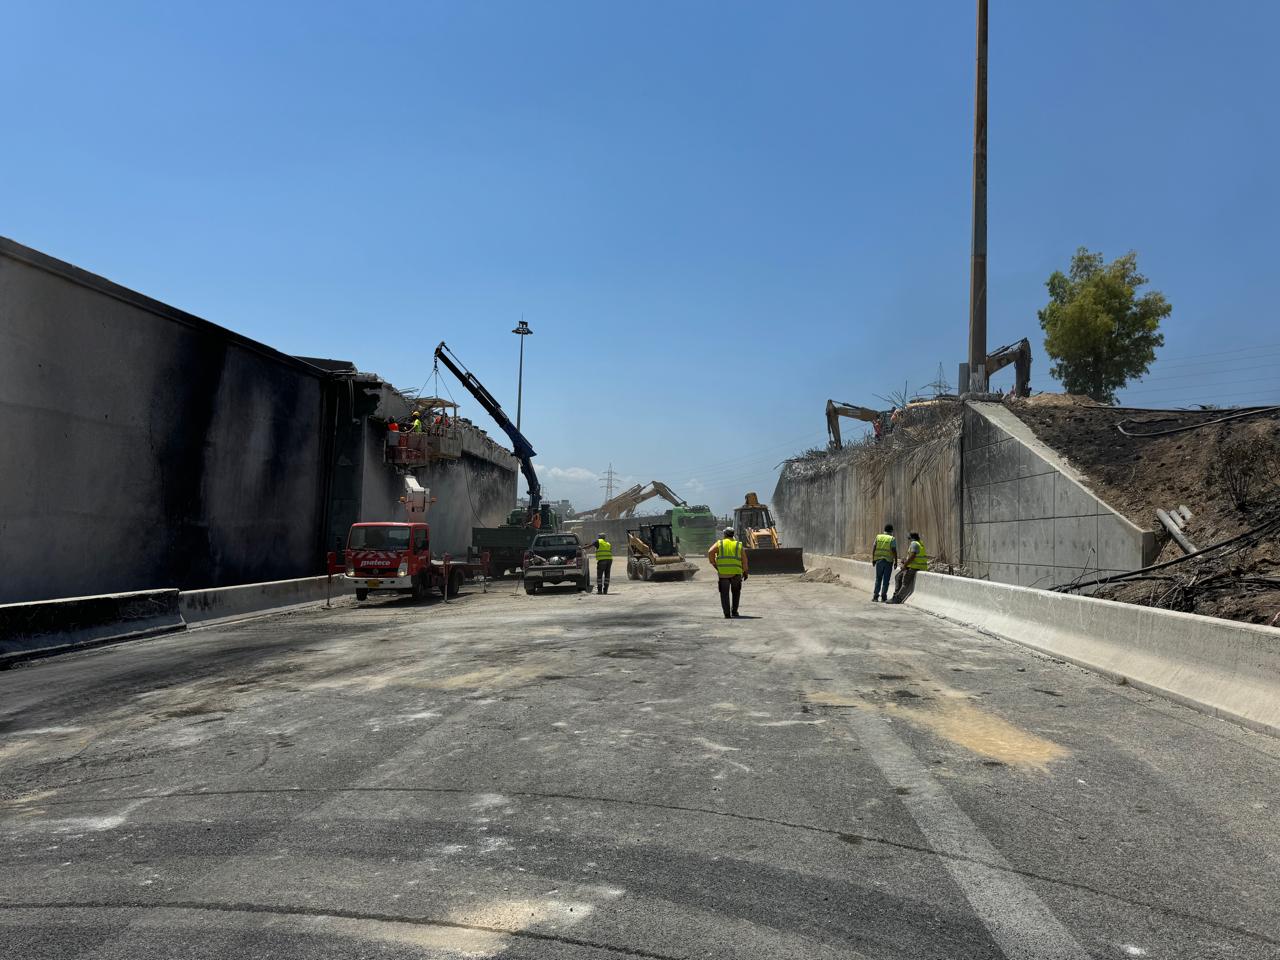 Αθηνών - Κορίνθου: Ολοκληρώθηκε η κατεδάφιση της γέφυρας - Πότε θα δοθούν στην κυκλοφορία οι λωρίδες